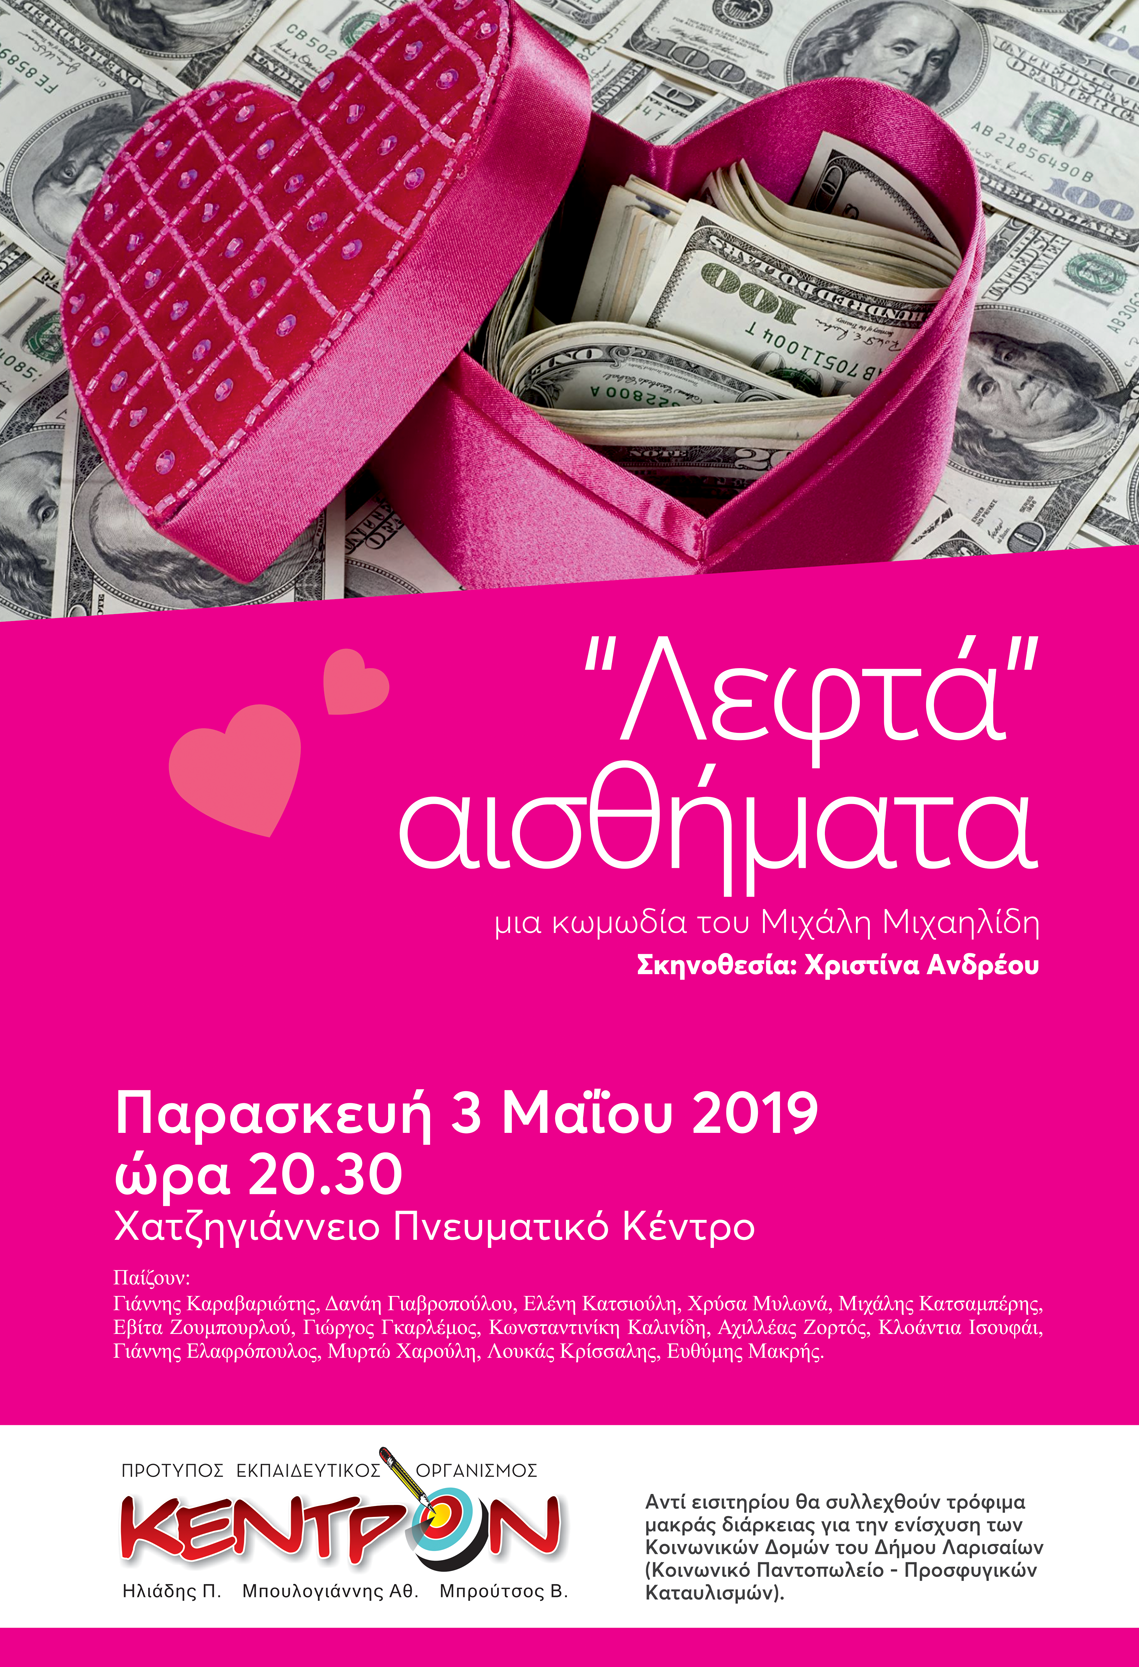 “Λεφτά” Αισθήματα στις 3 Μαΐου στο Χατζηγιάννειο